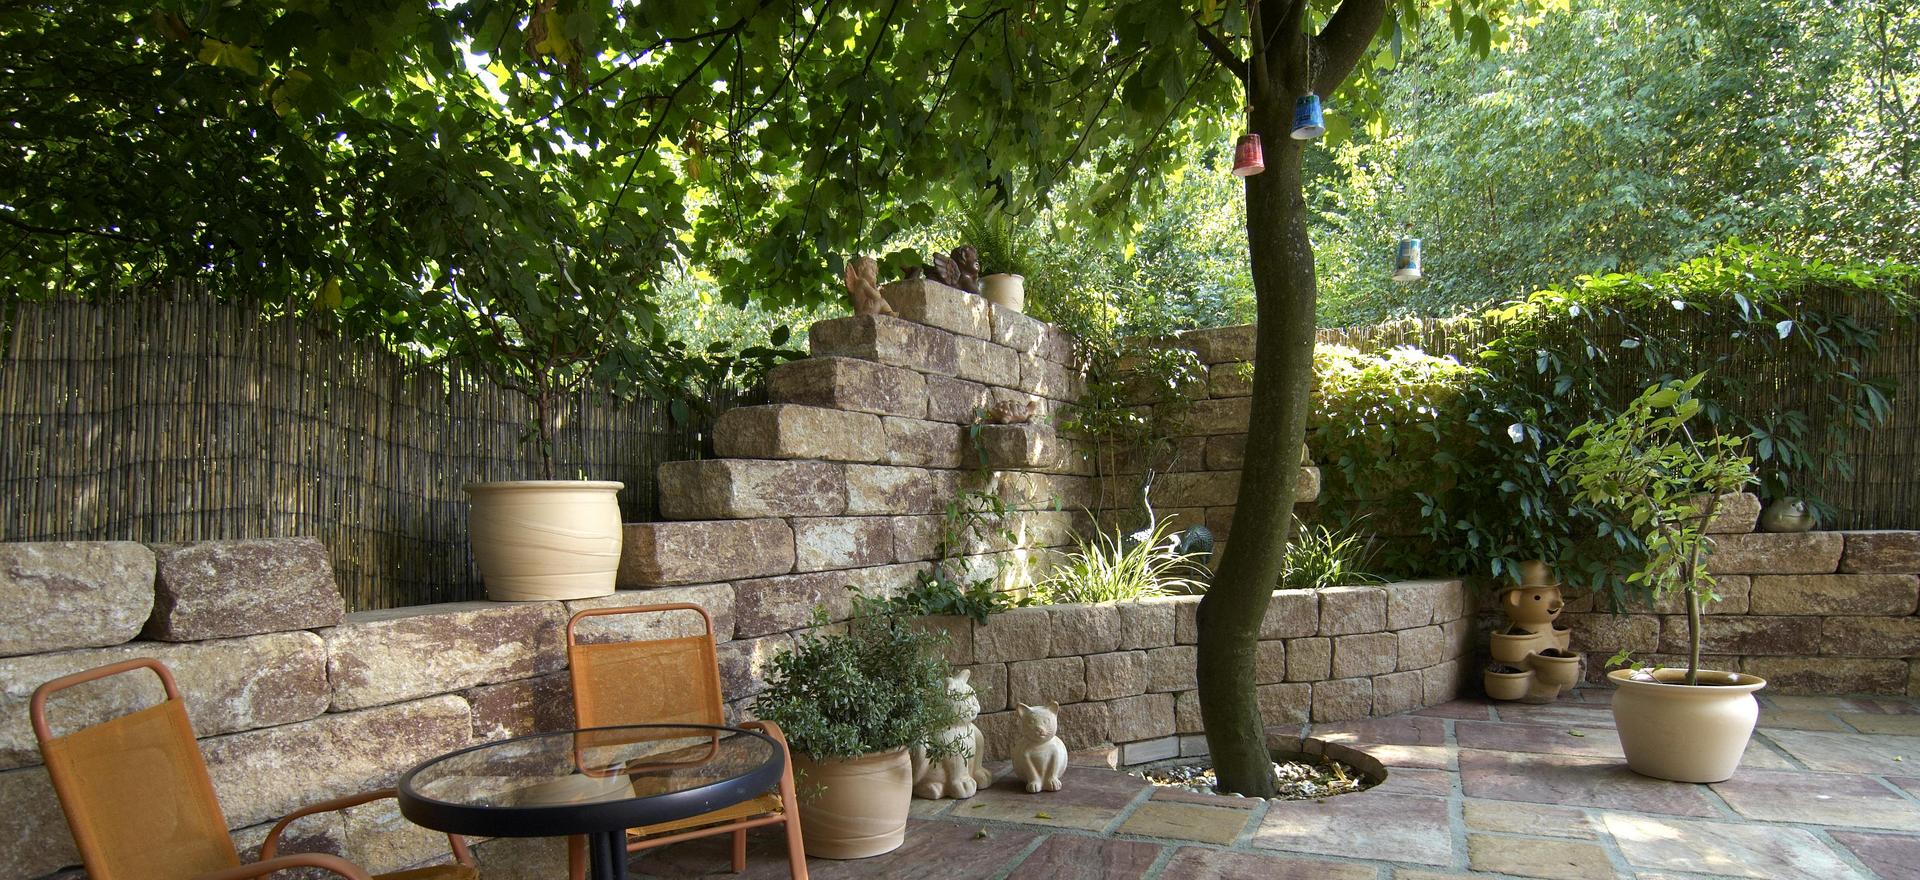 Terrasse mit Gartenmauer in Natursteinoptik